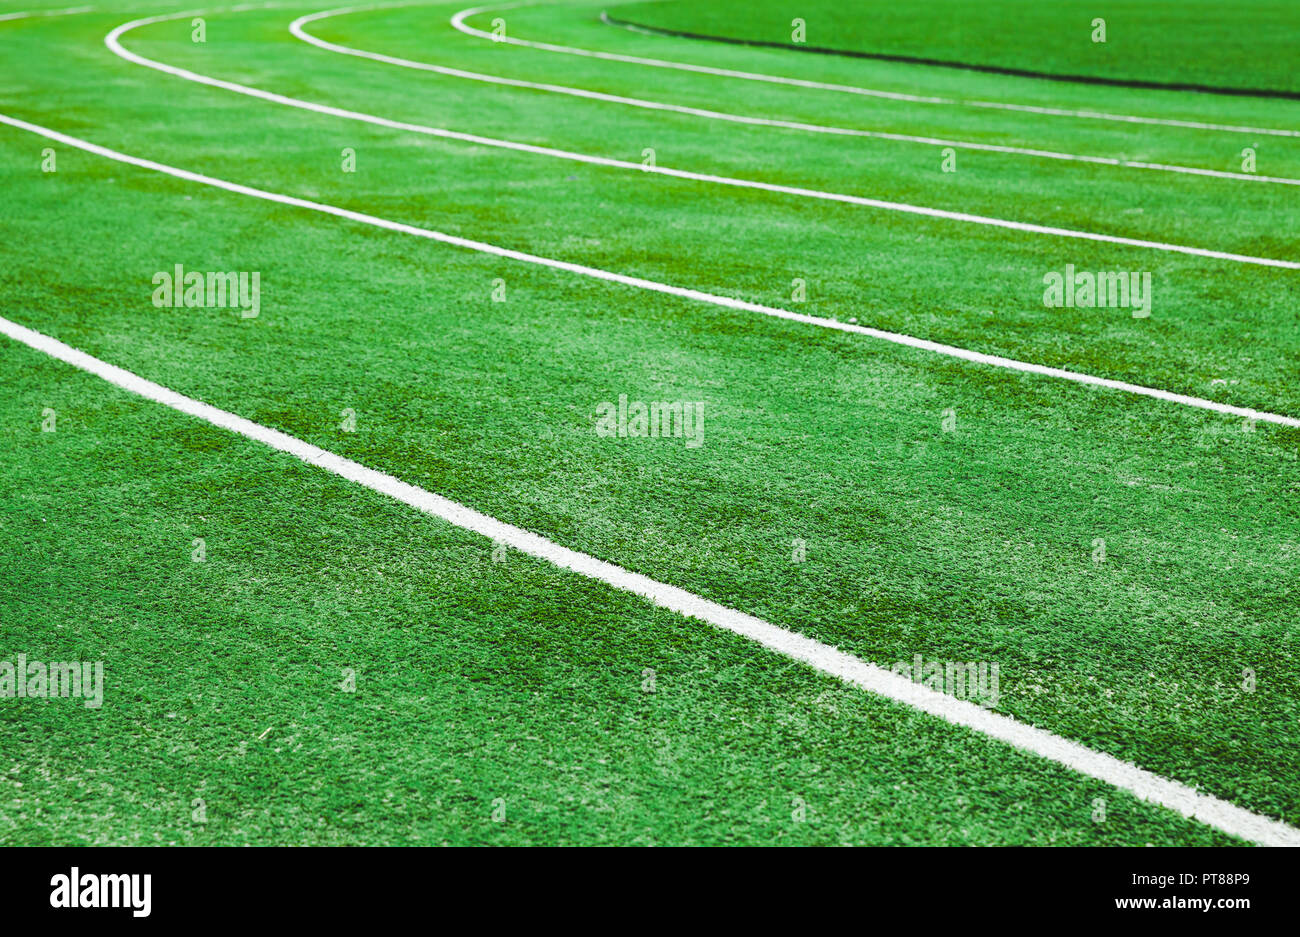 Terrain De Football En Gazon Artificiel, Une Ligne De Repère D'angle, Fond  Vert. Terrain Extérieur. Banque D'Images et Photos Libres De Droits. Image  206559562